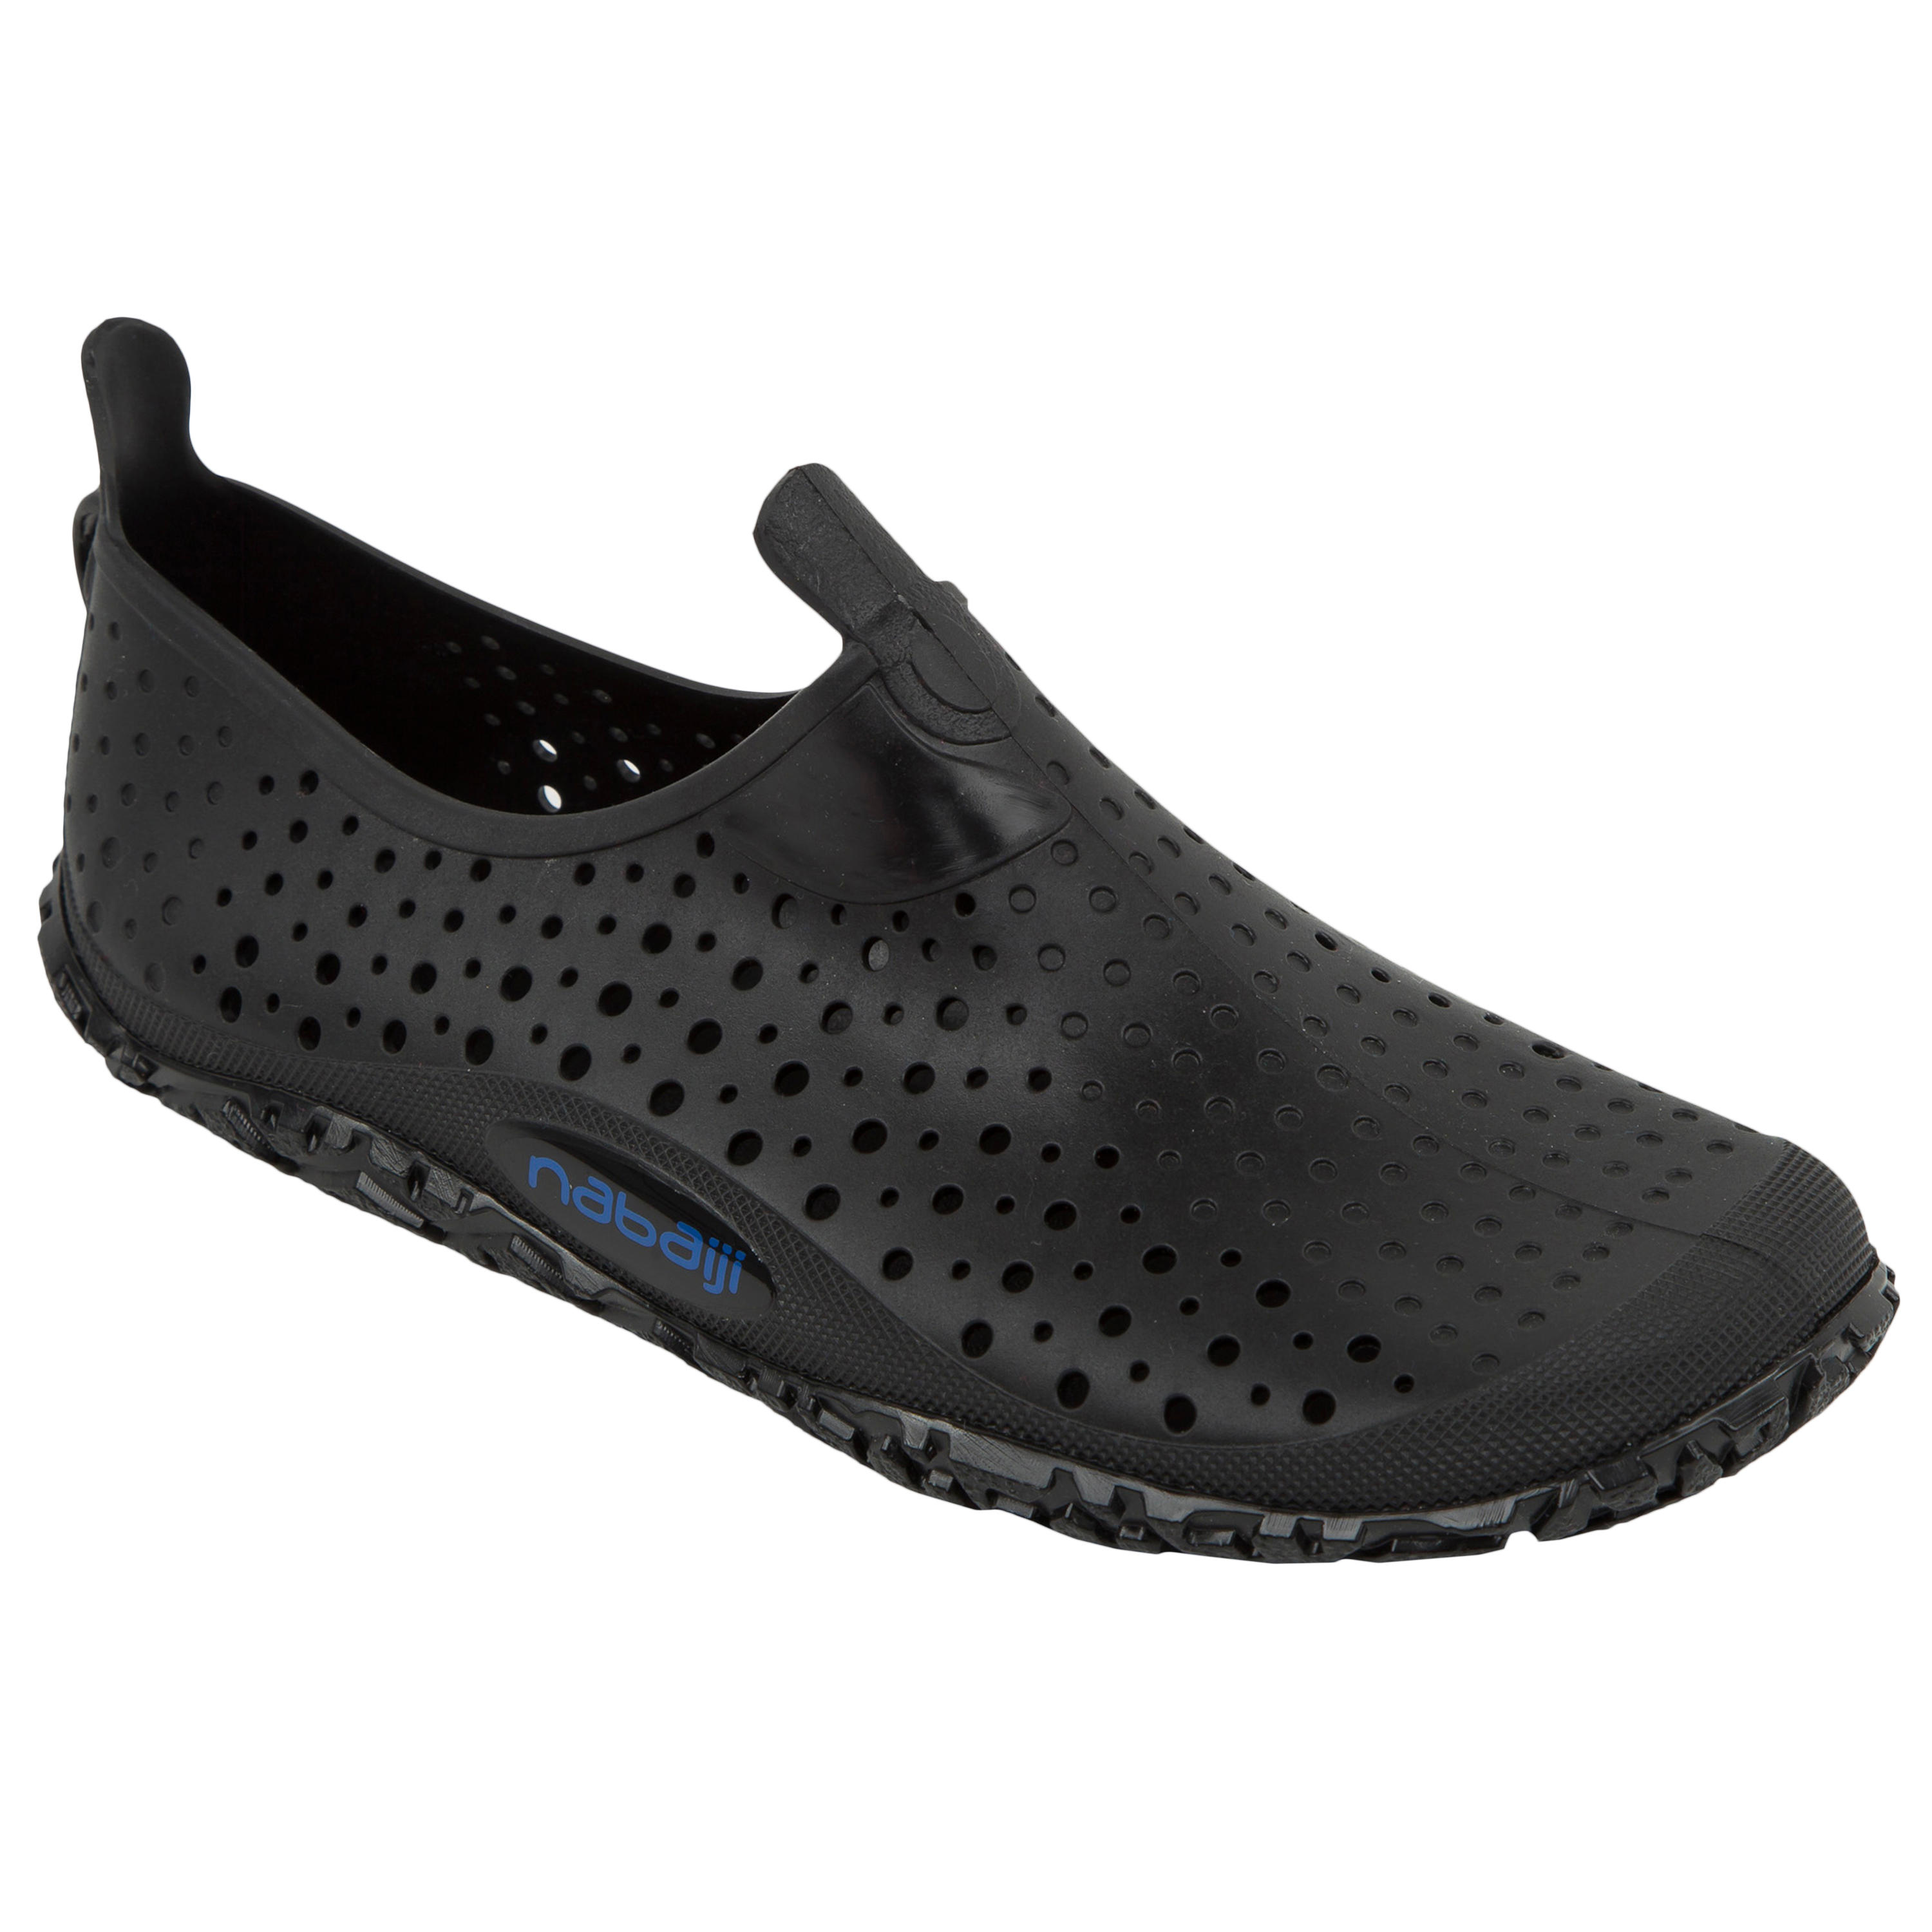 [ส่งฟรี ] รองเท้าสำหรับเต้นแอโรบิกในน้ำ ปั่นจักรยานในน้ำ และออกกำลังกายในน้ำรุ่น Aquadots (สีดำ) Shoes Aqua aerobics, Aquabiking and Aquafitness Aquadots Black รองเท้าออกกำลังกาย ผู้ชาย ผู้หญิง